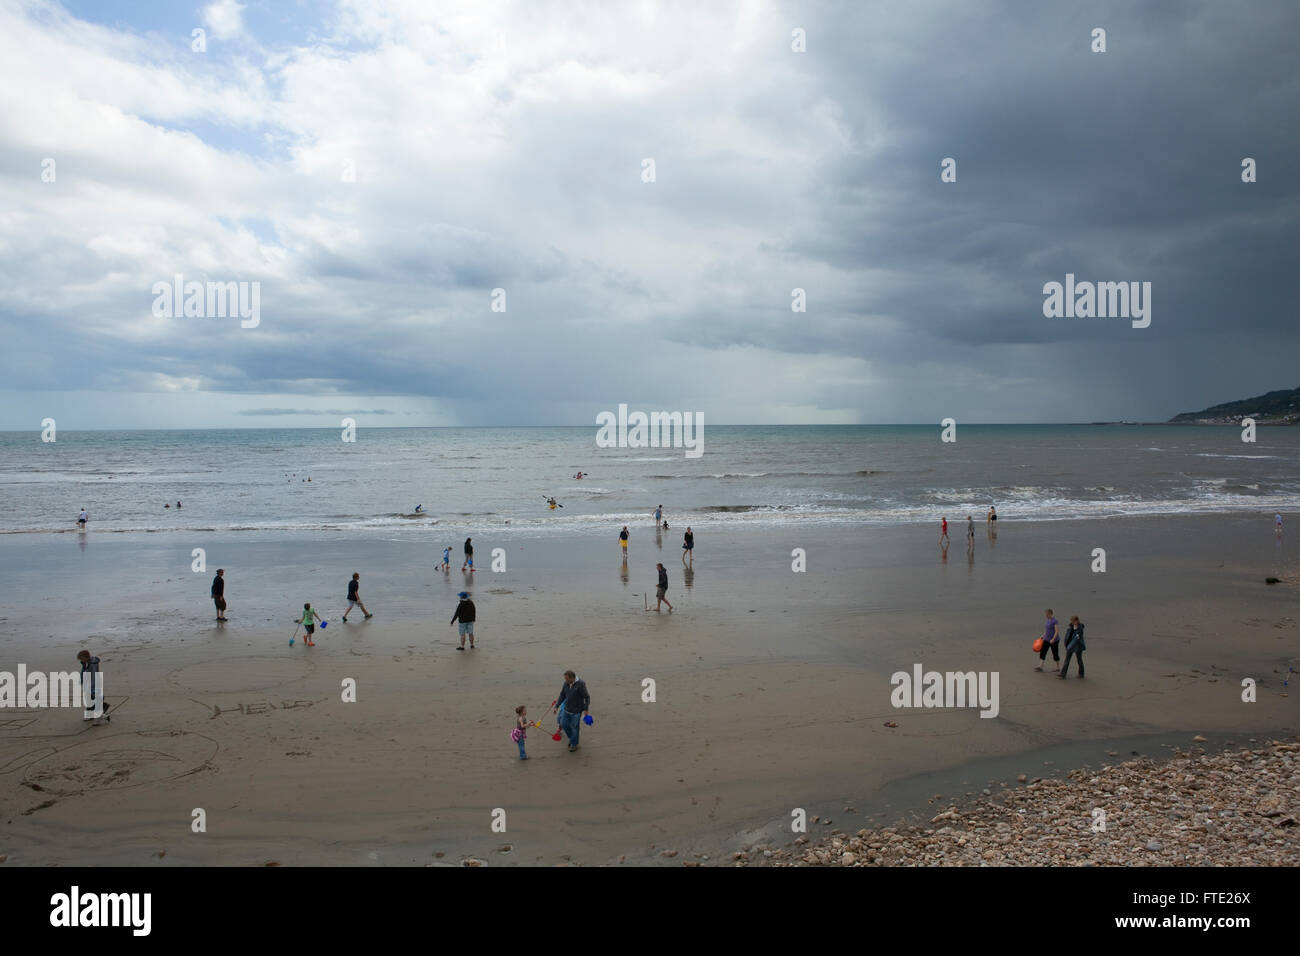 Maison de vacances balades et décideurs jouant sur le sable d'une plage britannique dans une scène d'été typiquement britannique, le temps nuageux et humide avec un manque de soleil. Banque D'Images